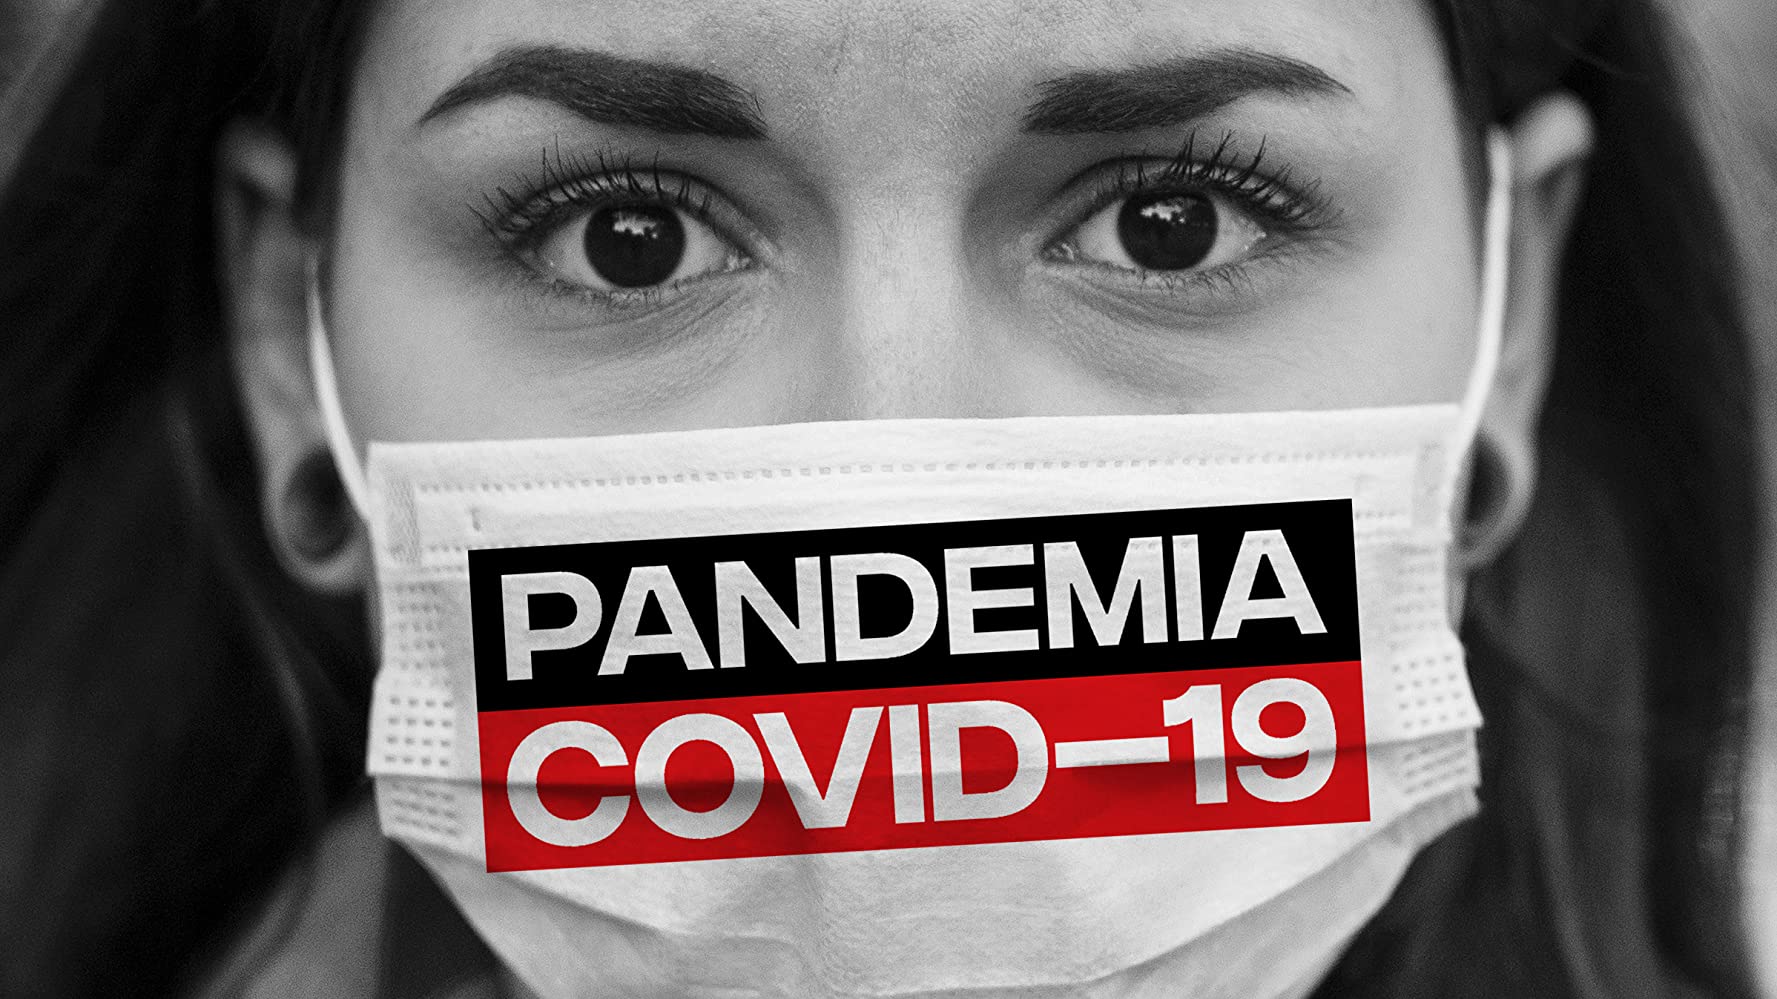 პანდემია: COVID-19 / Pandemic: Covid-19 ქართულად